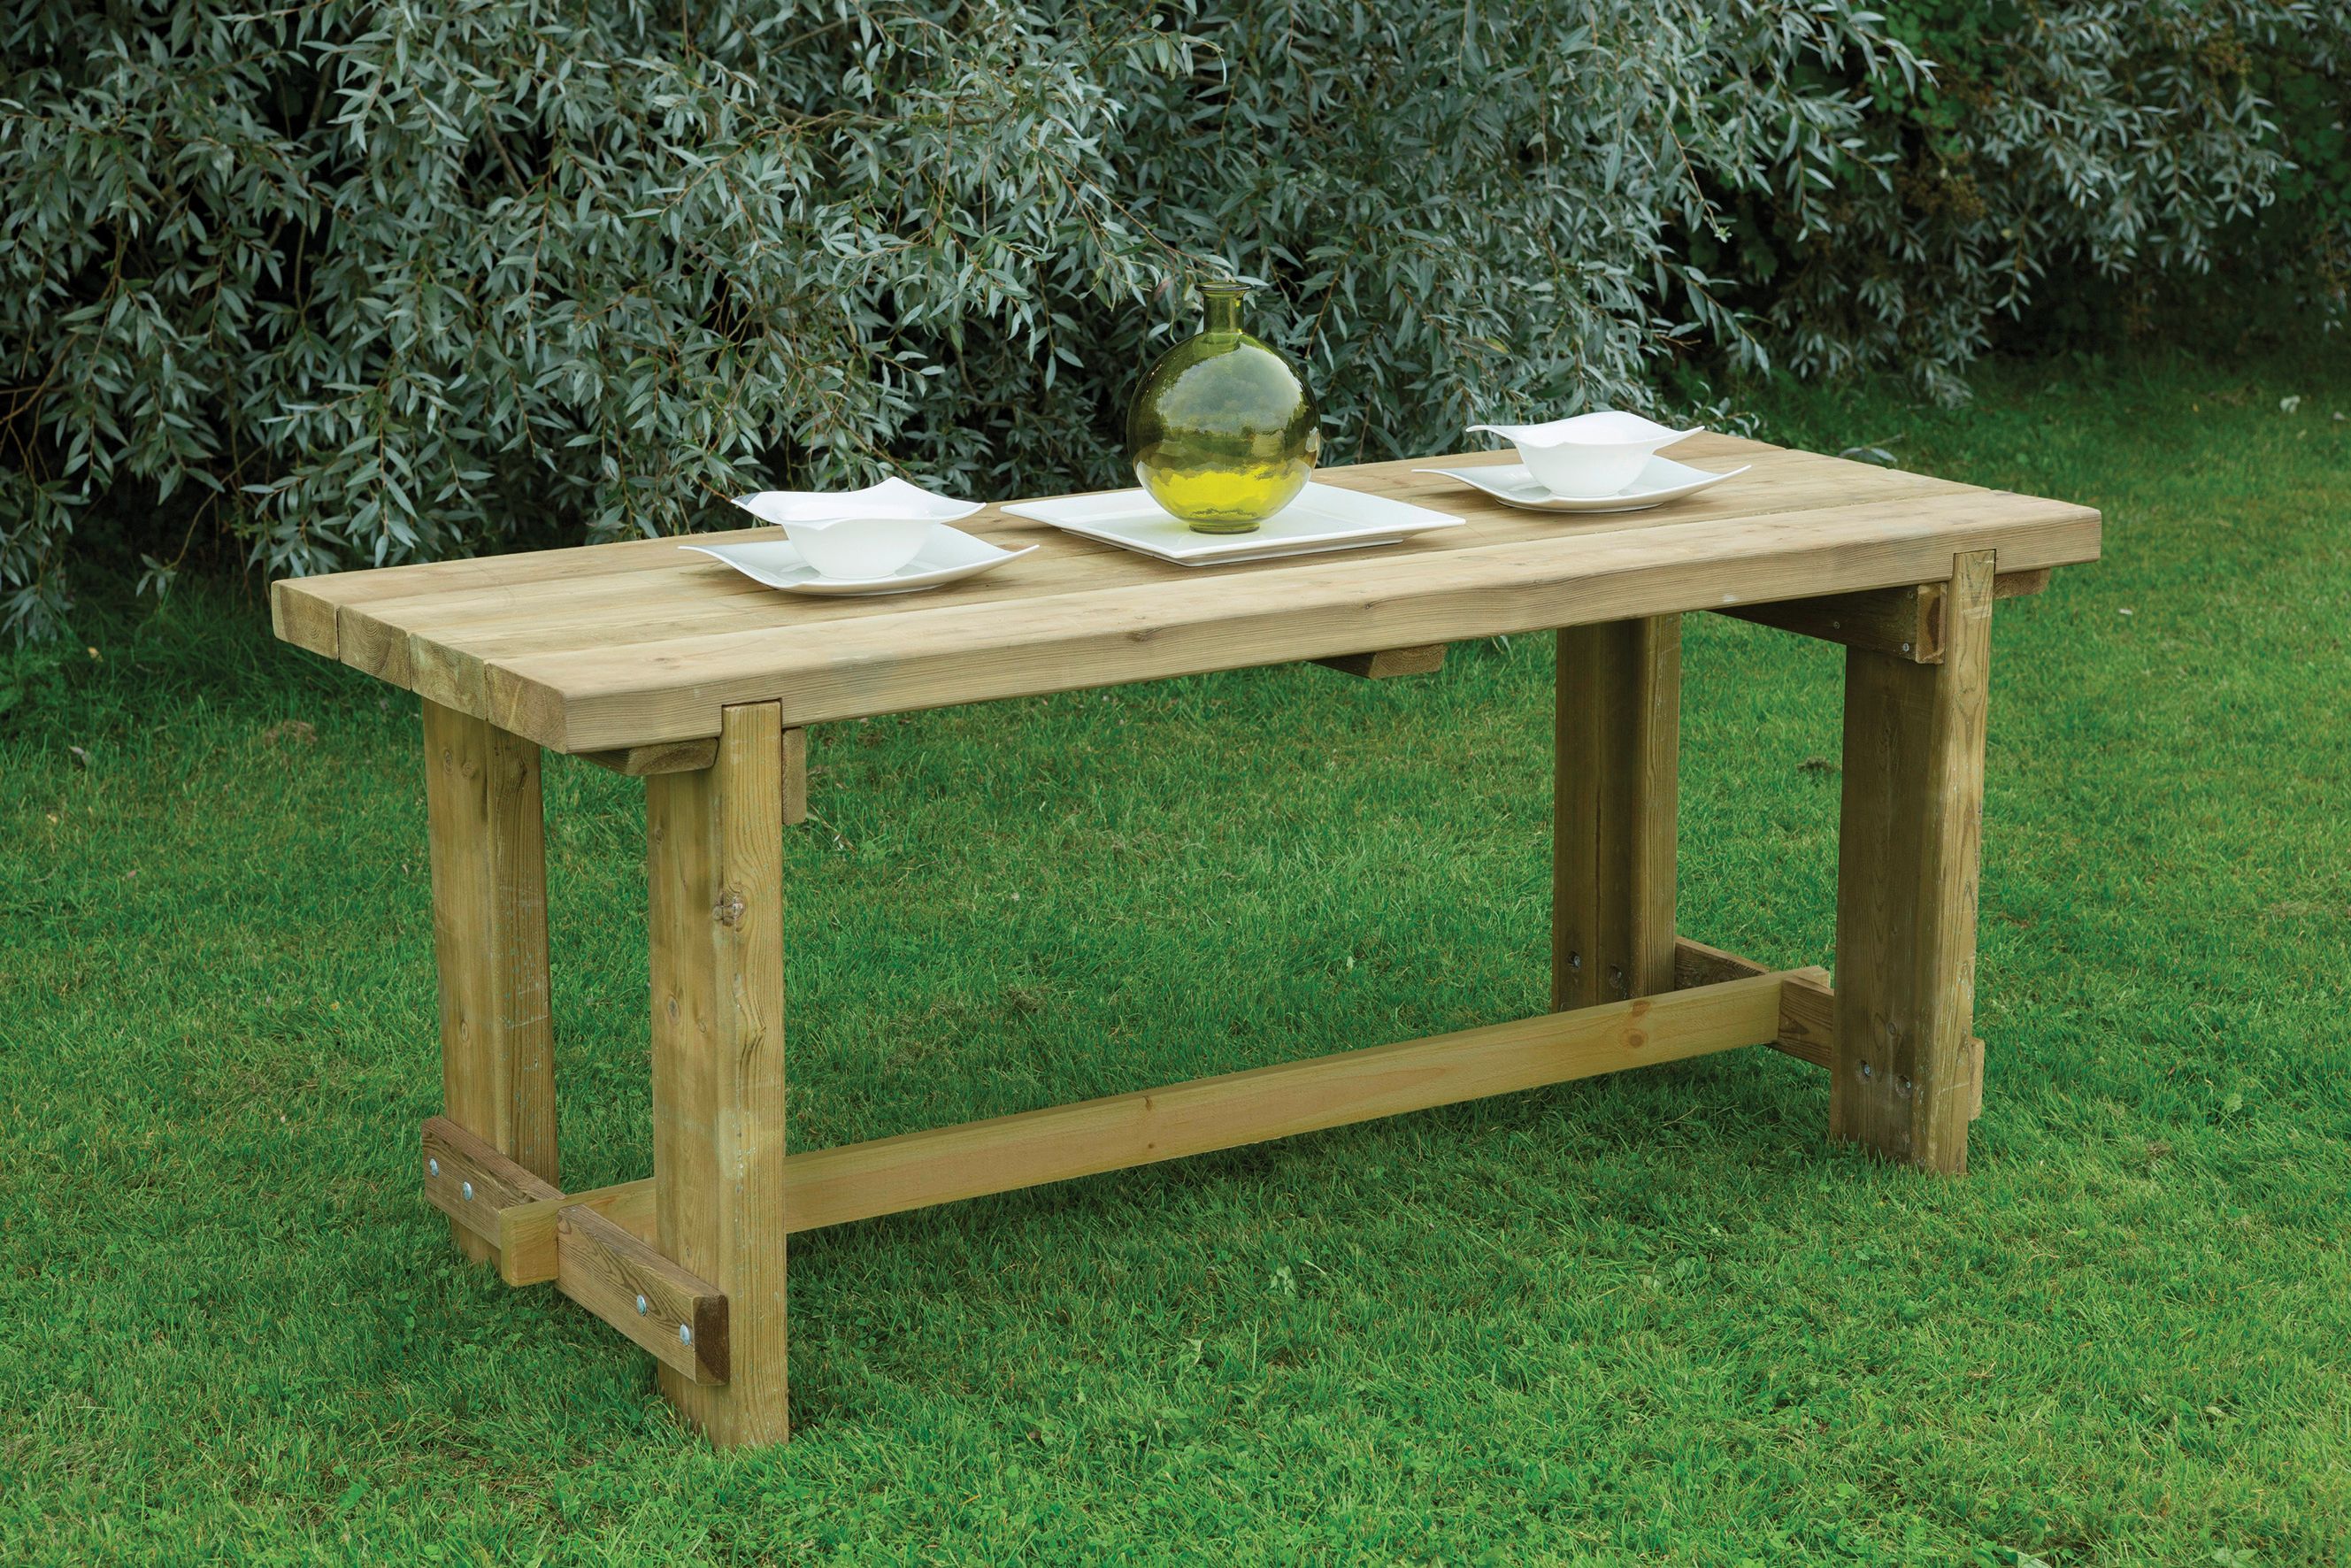 Forest Garden Refectory Wooden Garden Table - 1.8m